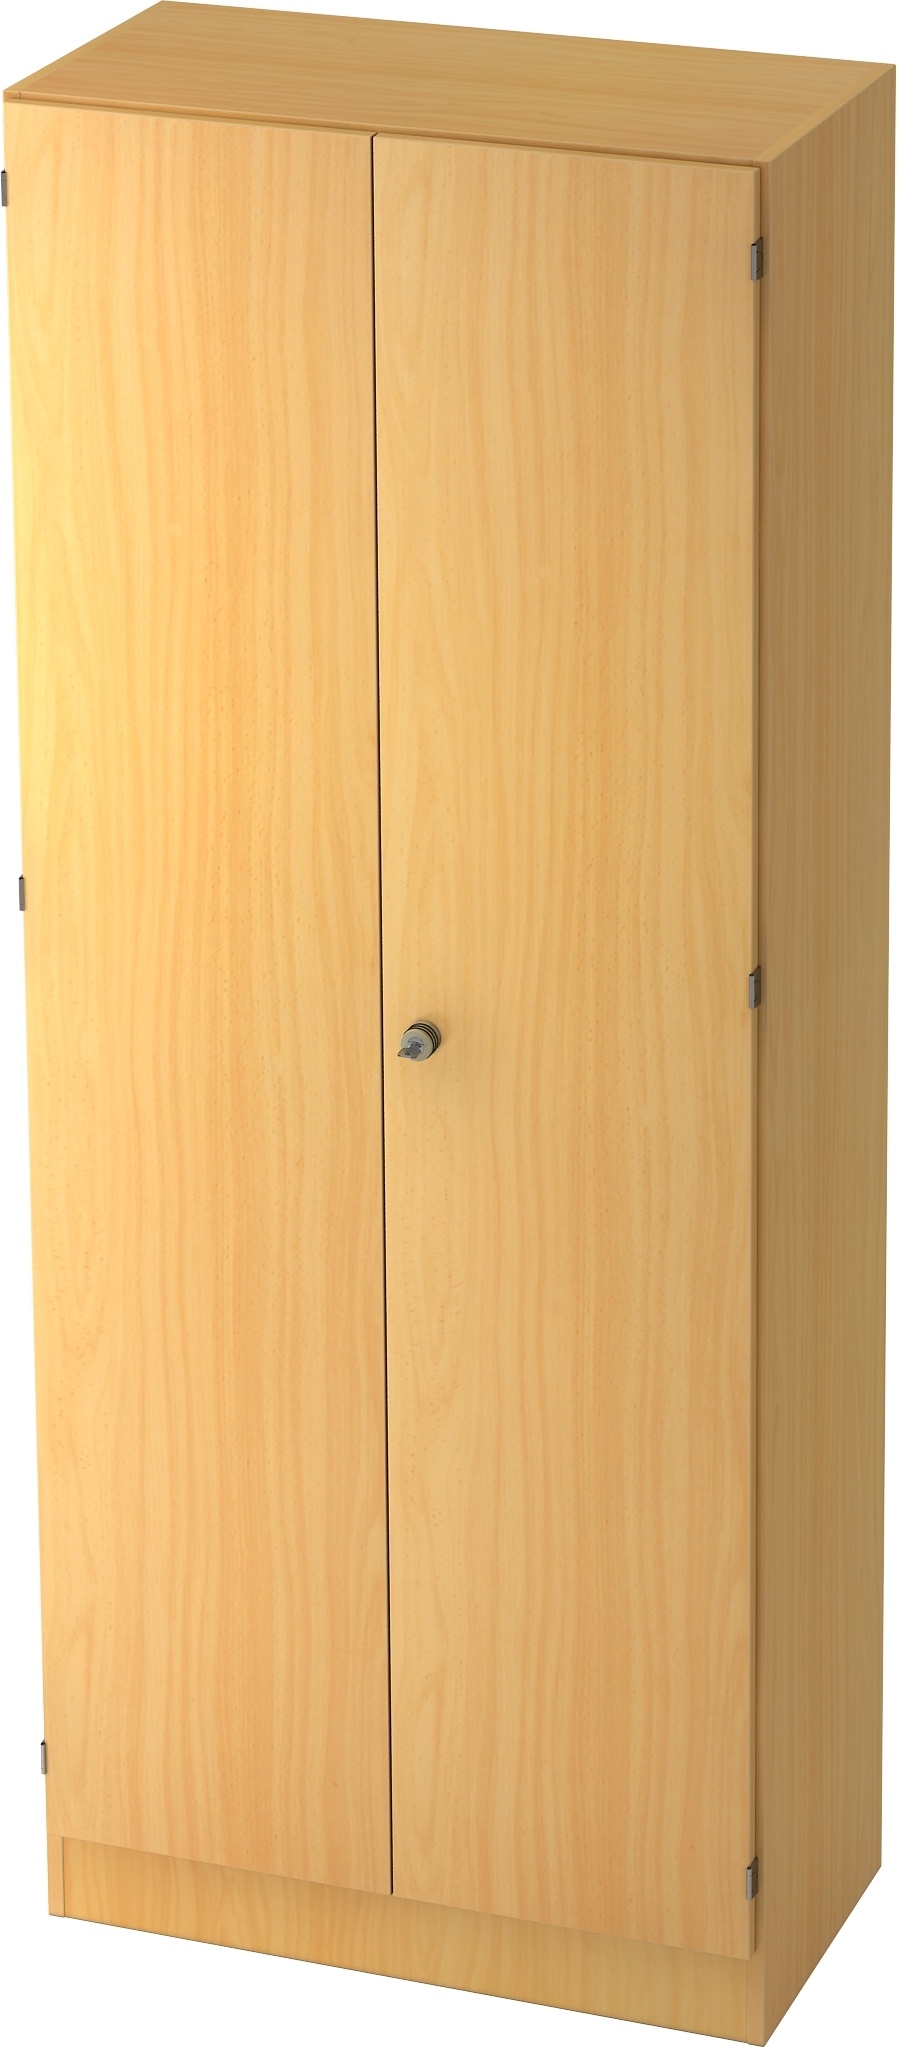 bümö office Kleiderschrank Holz abschließbar mit Spiegel, Büroschrank 80 cm breit in Buche - Flur Schrank als Garderobe für Jacken, Taschen & Co. im